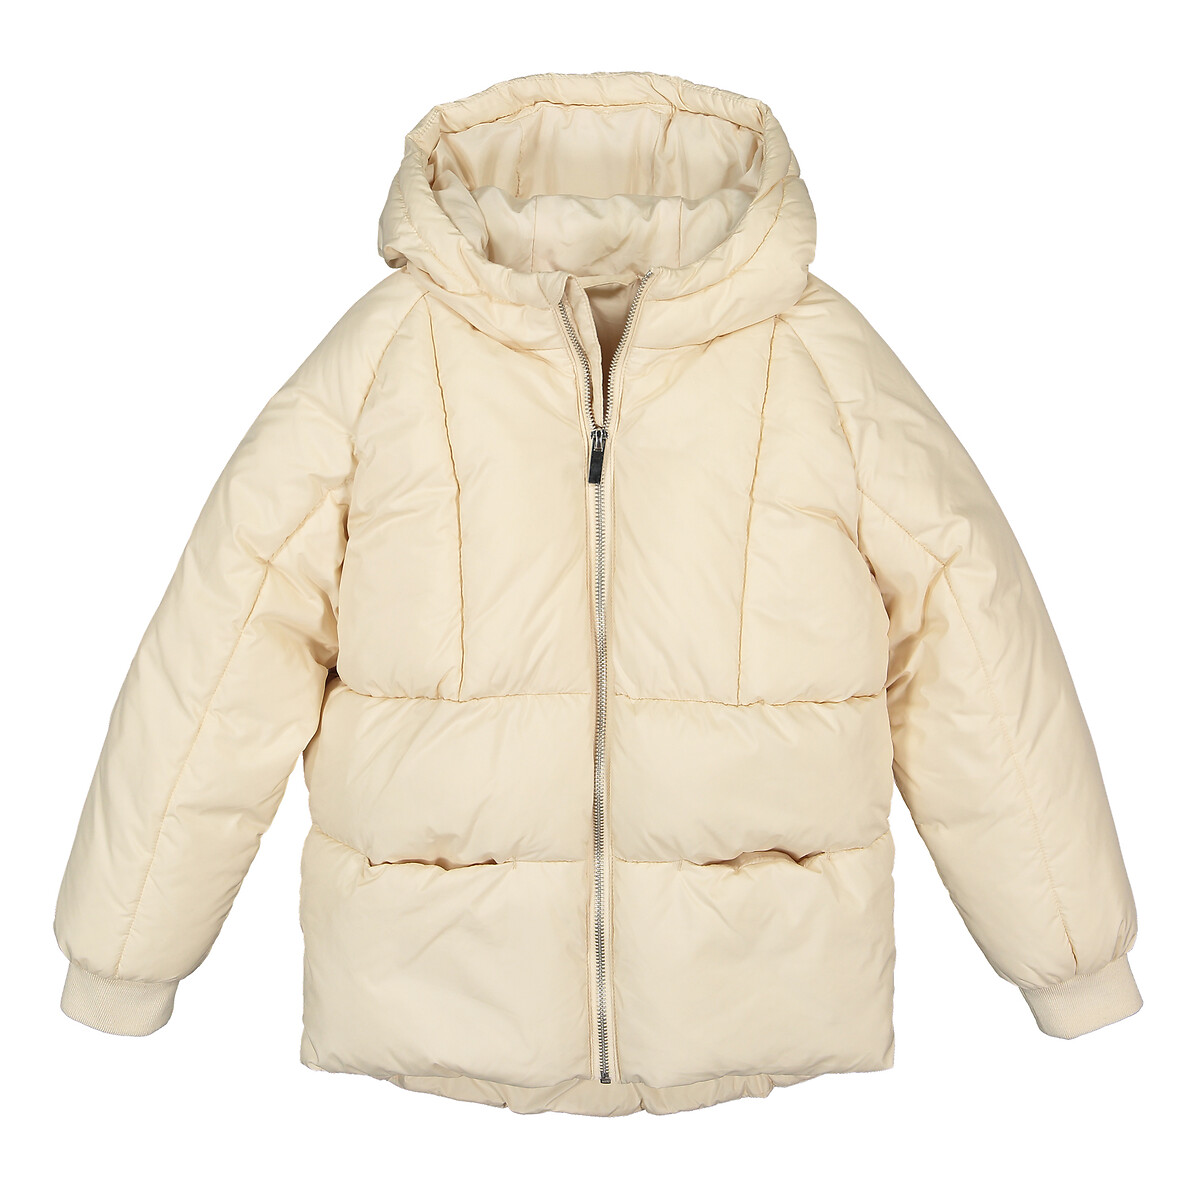 Куртка LaRedoute Стеганая с капюшоном теплая и пышная 3-14 лет 5 лет - 108 см бежевый, размер 5 лет - 108 см - фото 3